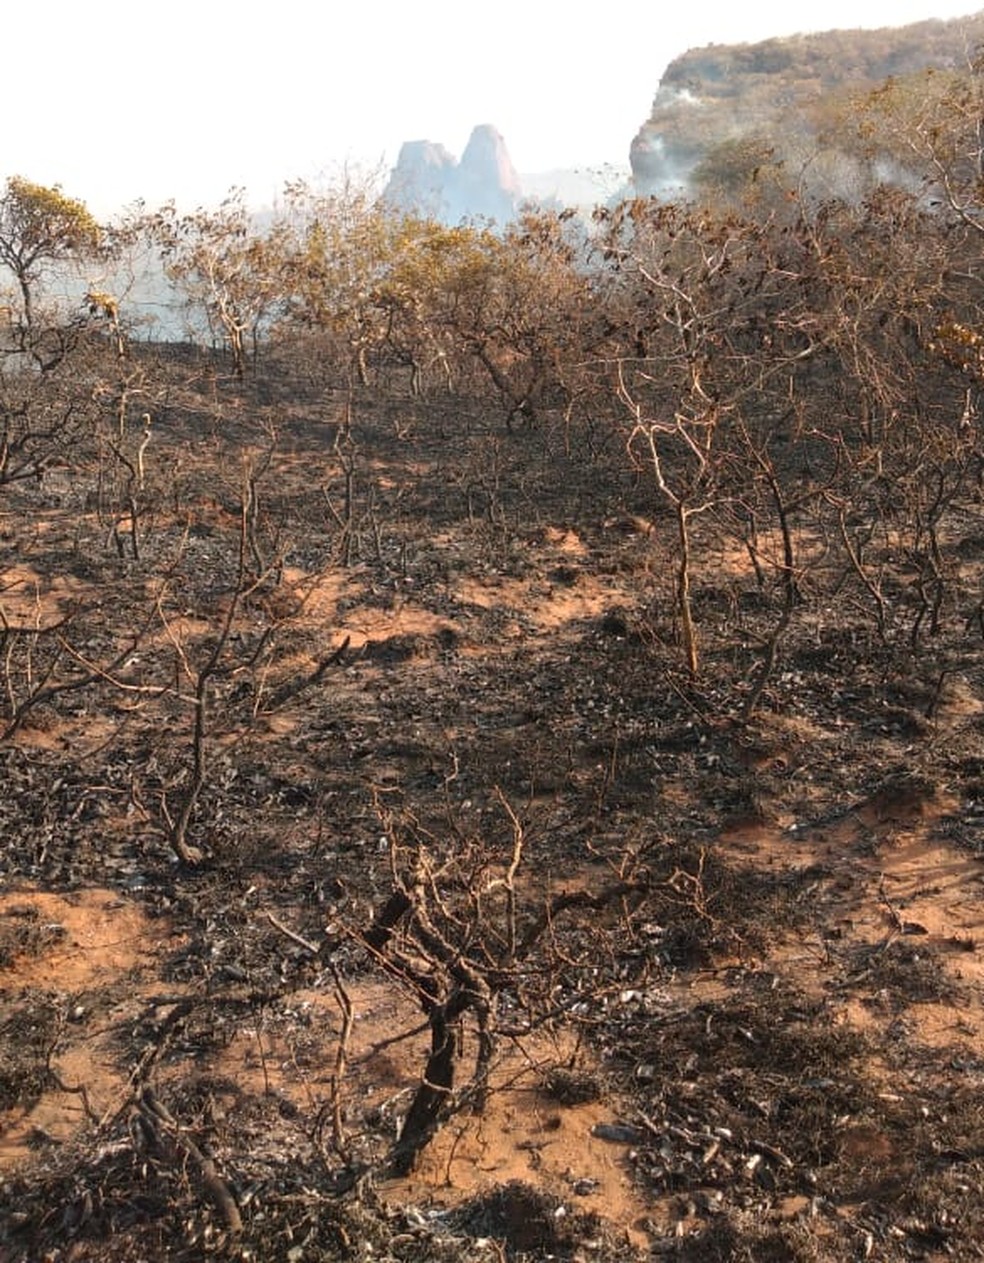 Cerca de mil hectares foram destrudos pelo fogo.  Foto: ICMBio